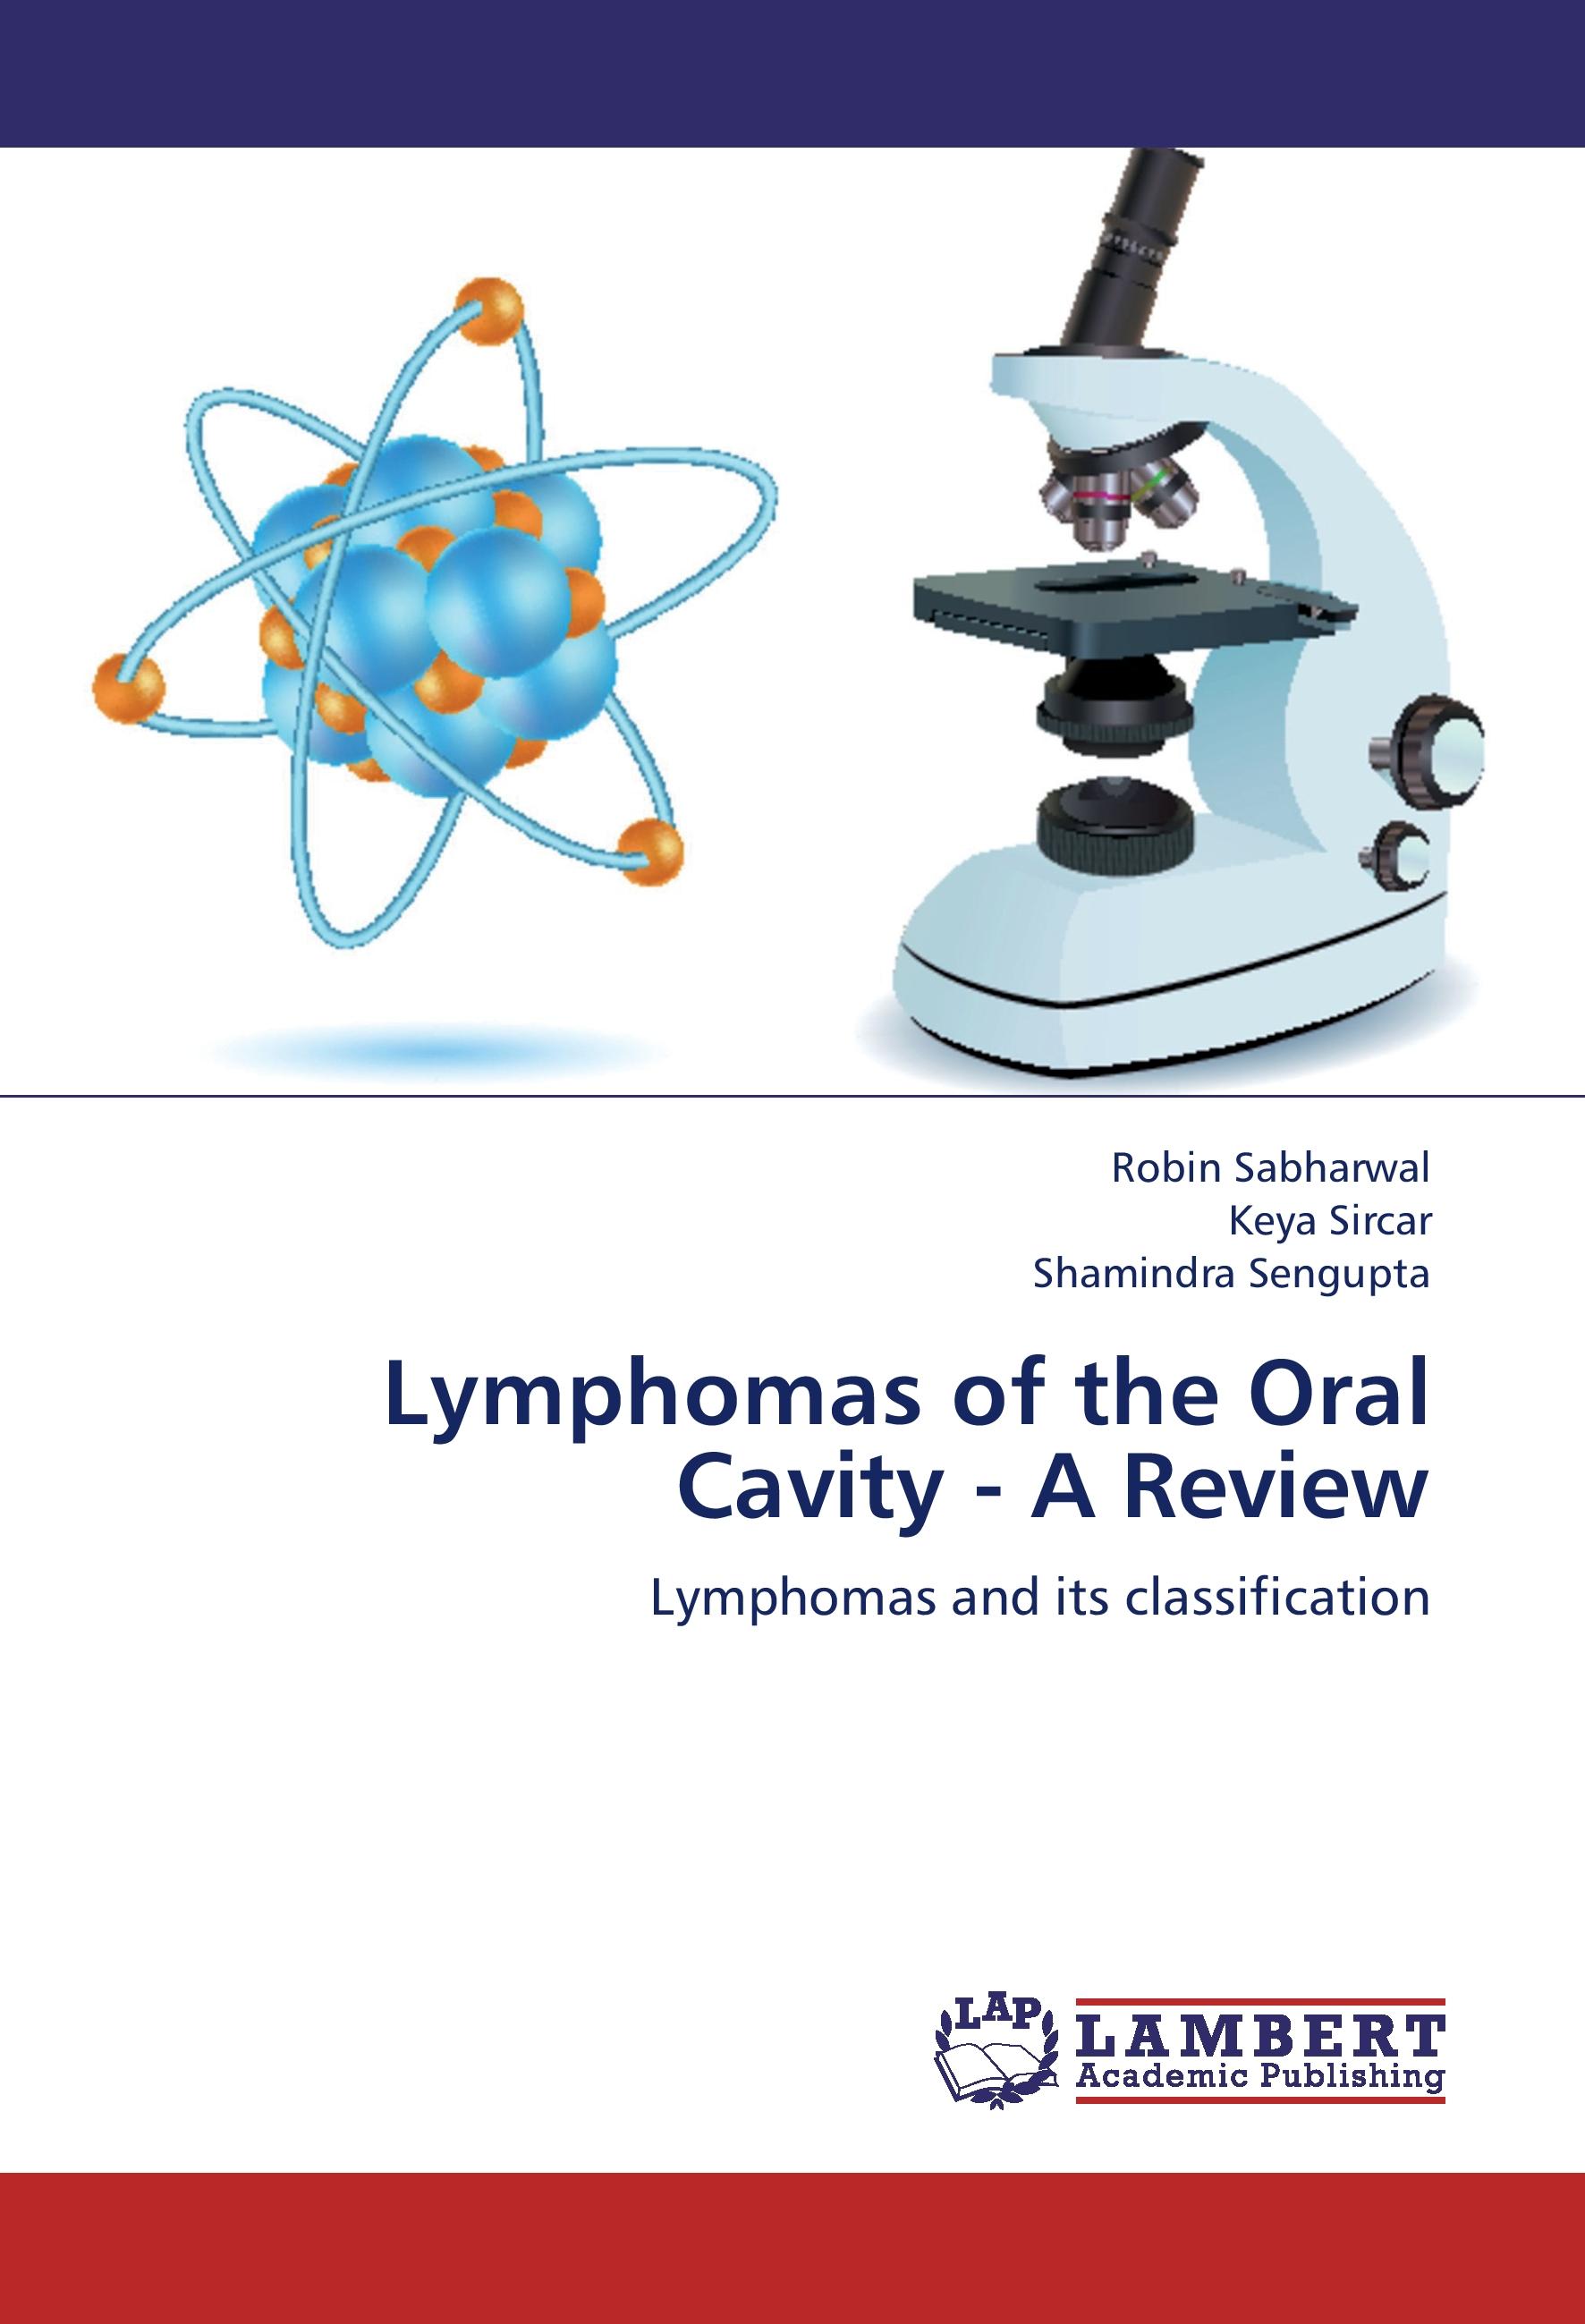 Lymphomas of the Oral Cavity - A Review - Sabharwal, Robin|Sircar, Keya|Sengupta, Shamindra